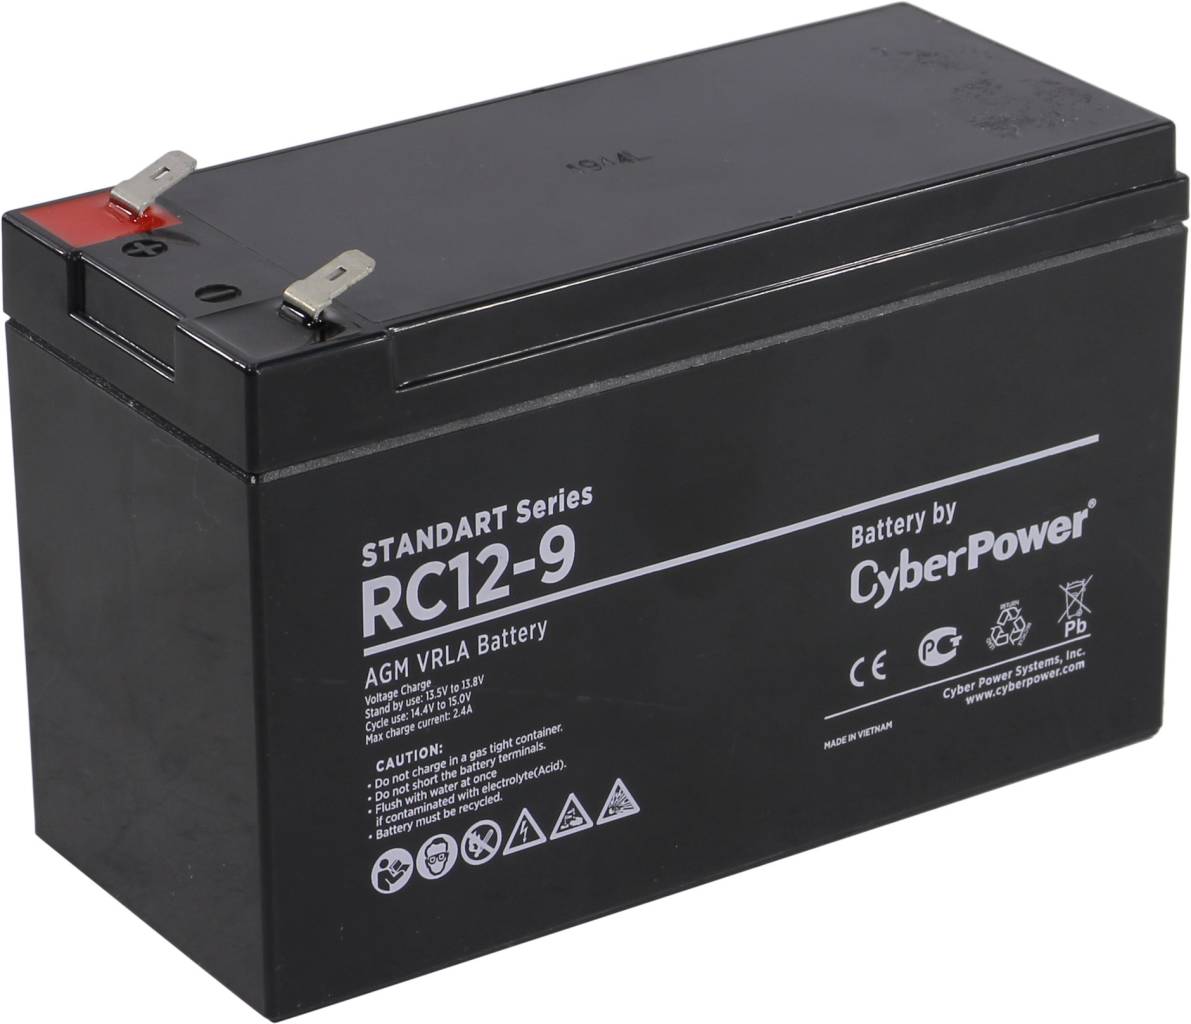   12V    9.0Ah Cyberpower RC 12-9 Battery CyberPower Standart series    UPS